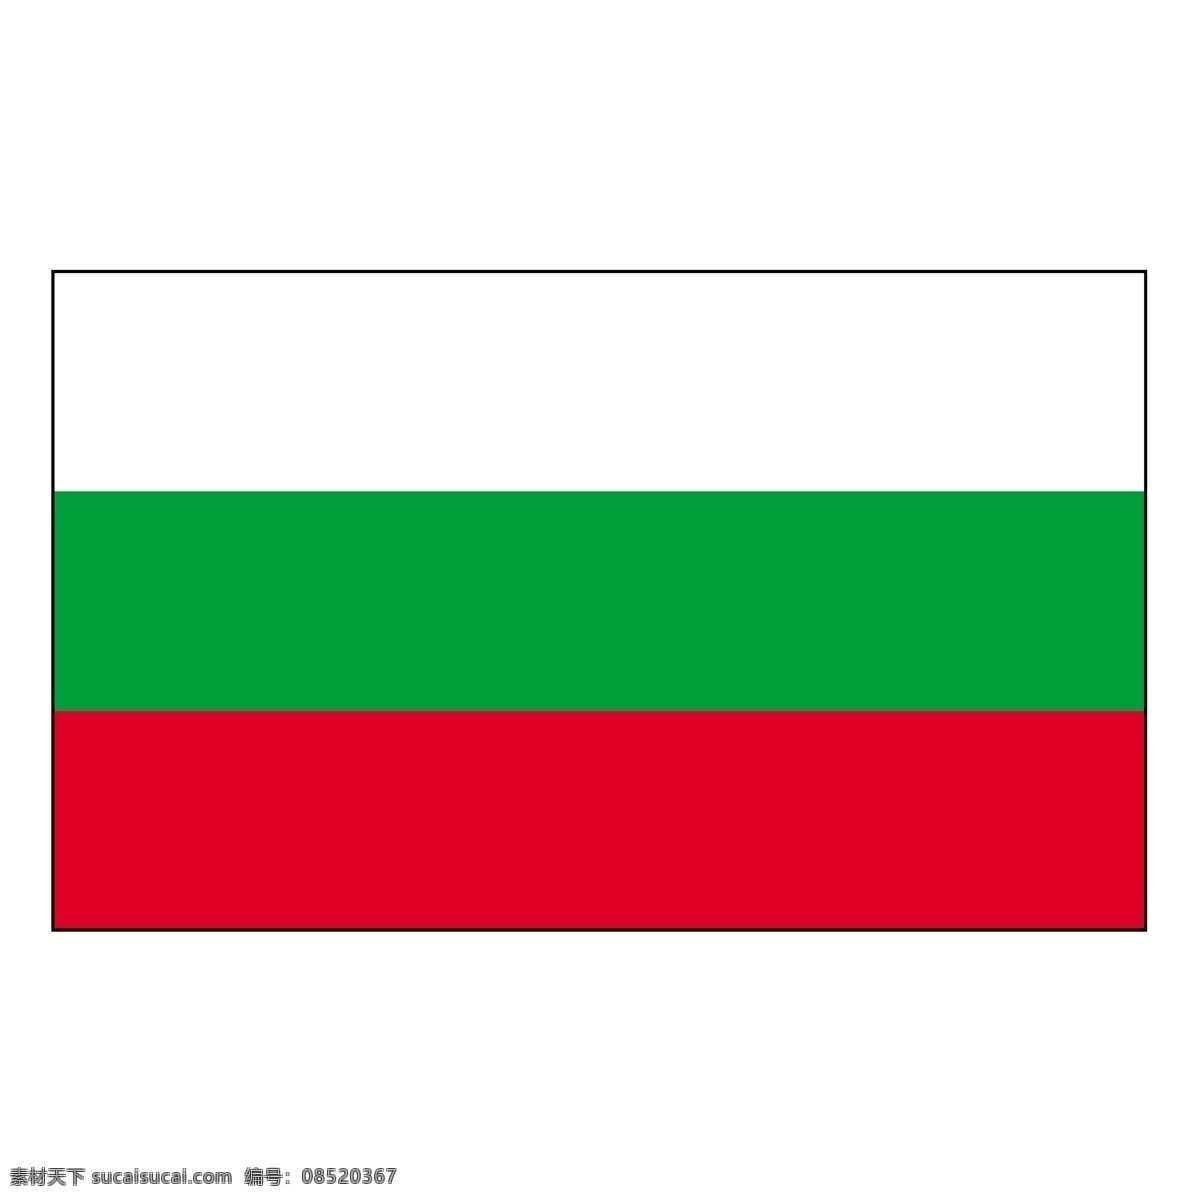 保加利亚0 保加利亚 免费 矢量 矢量保加利亚 图形 保加利亚国旗 标志 国旗 黑色